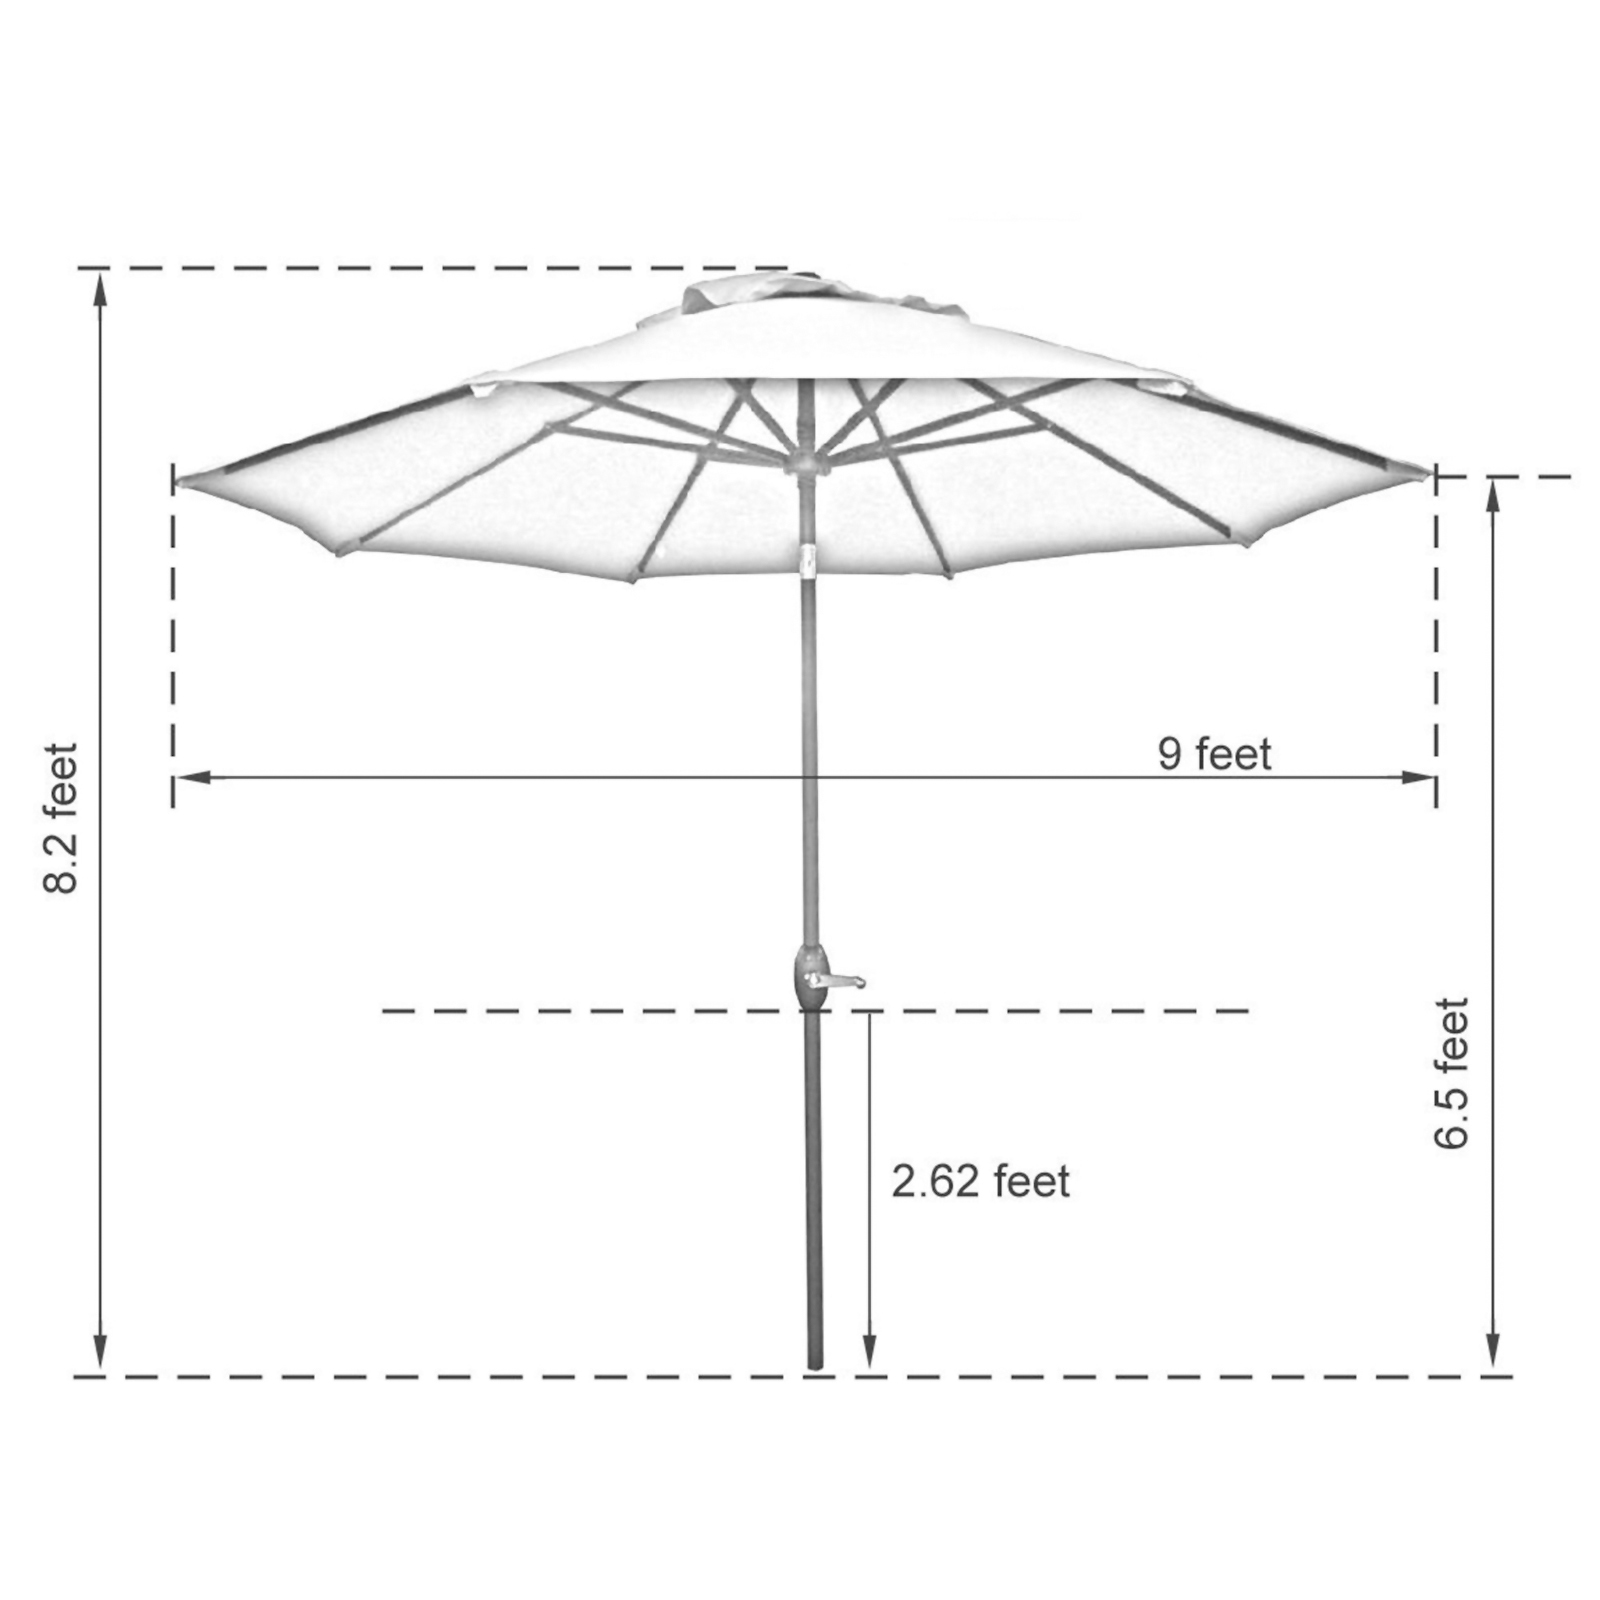 Abba Patio Market Patio Umbrella With Push Button Sears Marketplae